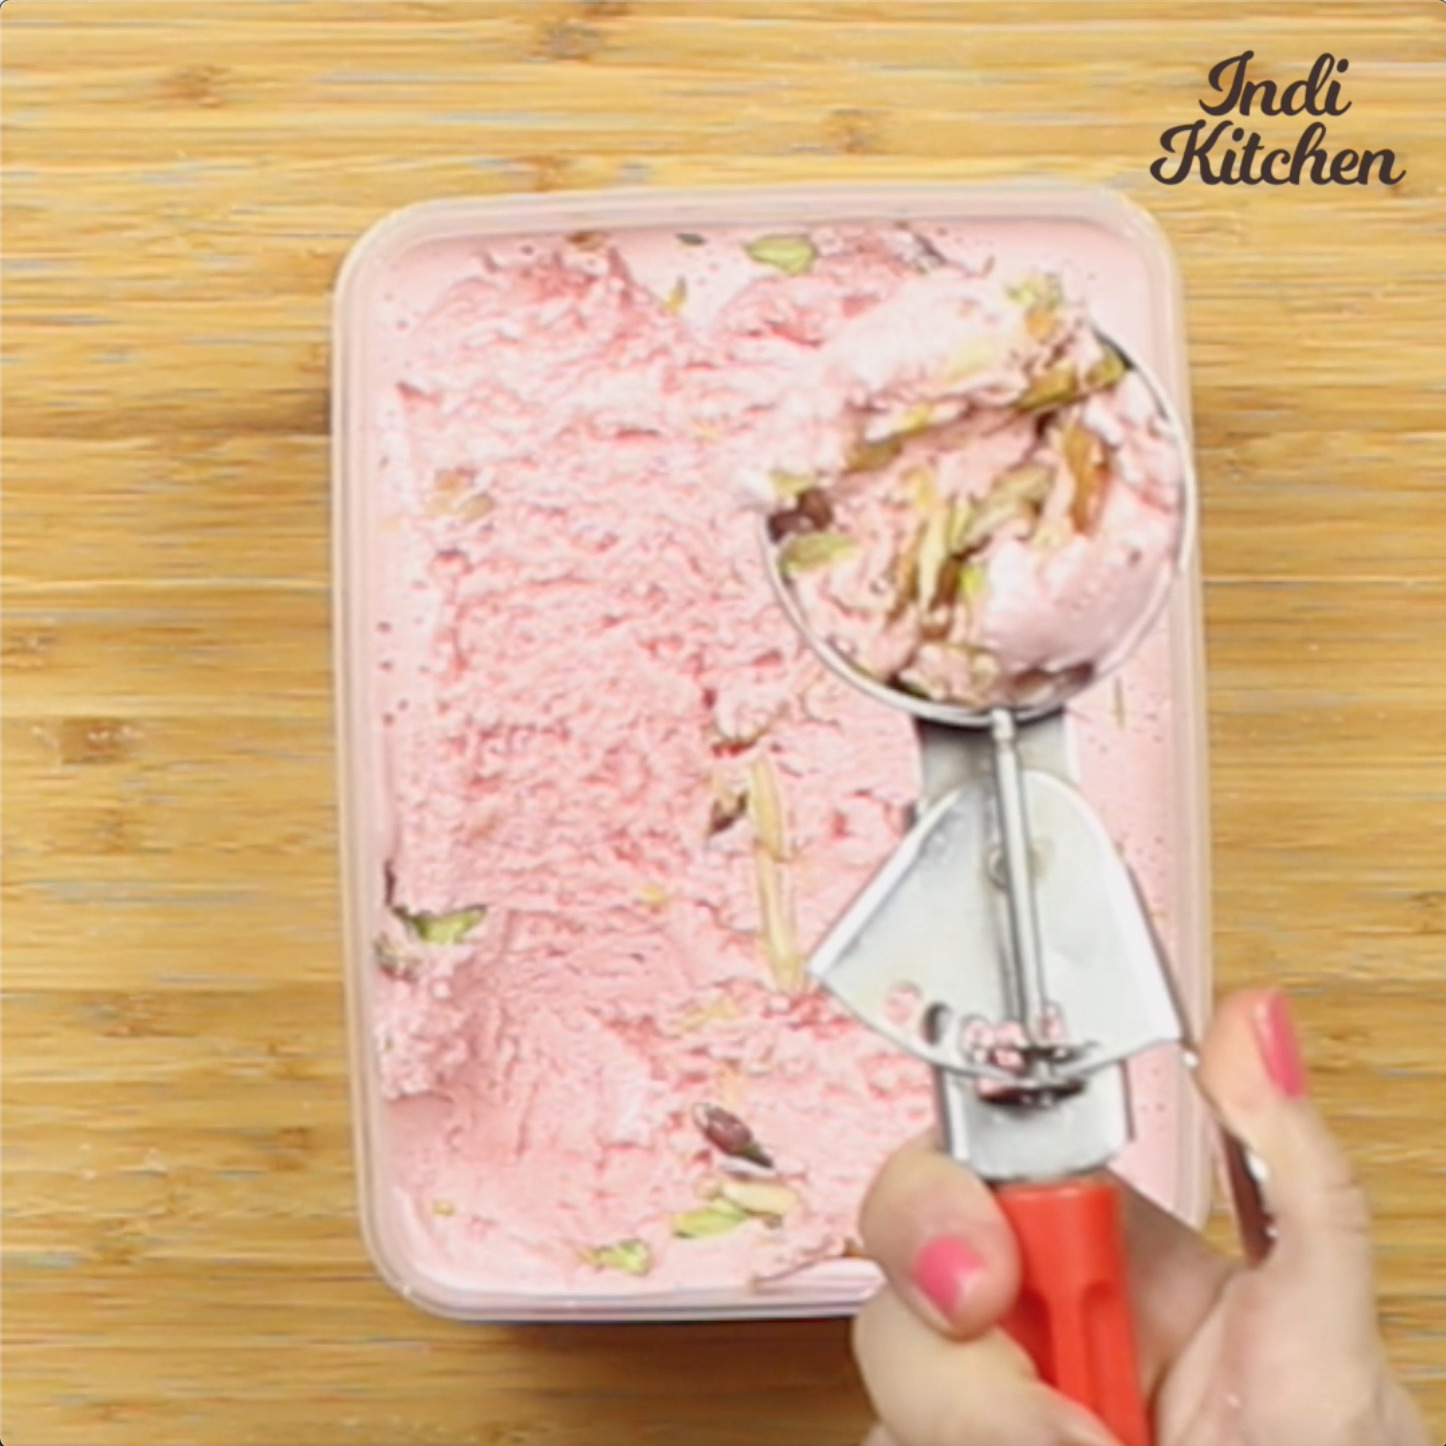 How to make strawberry cheese ice cream 